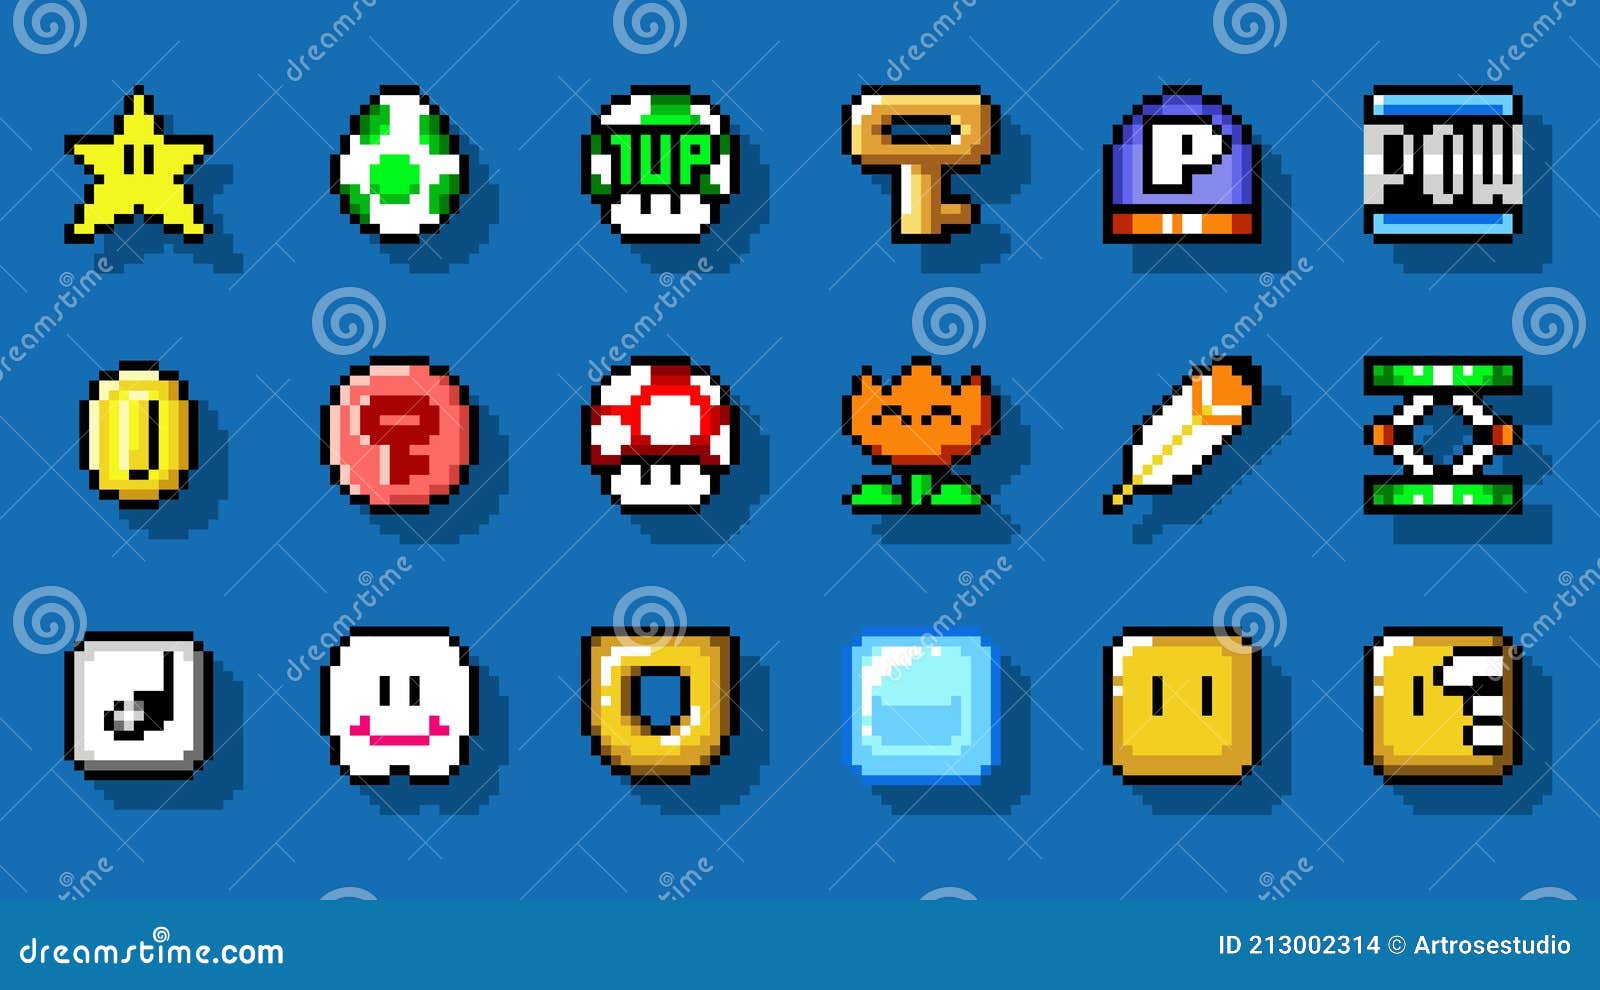 Jogue Super Mario World Classic gratuitamente sem downloads